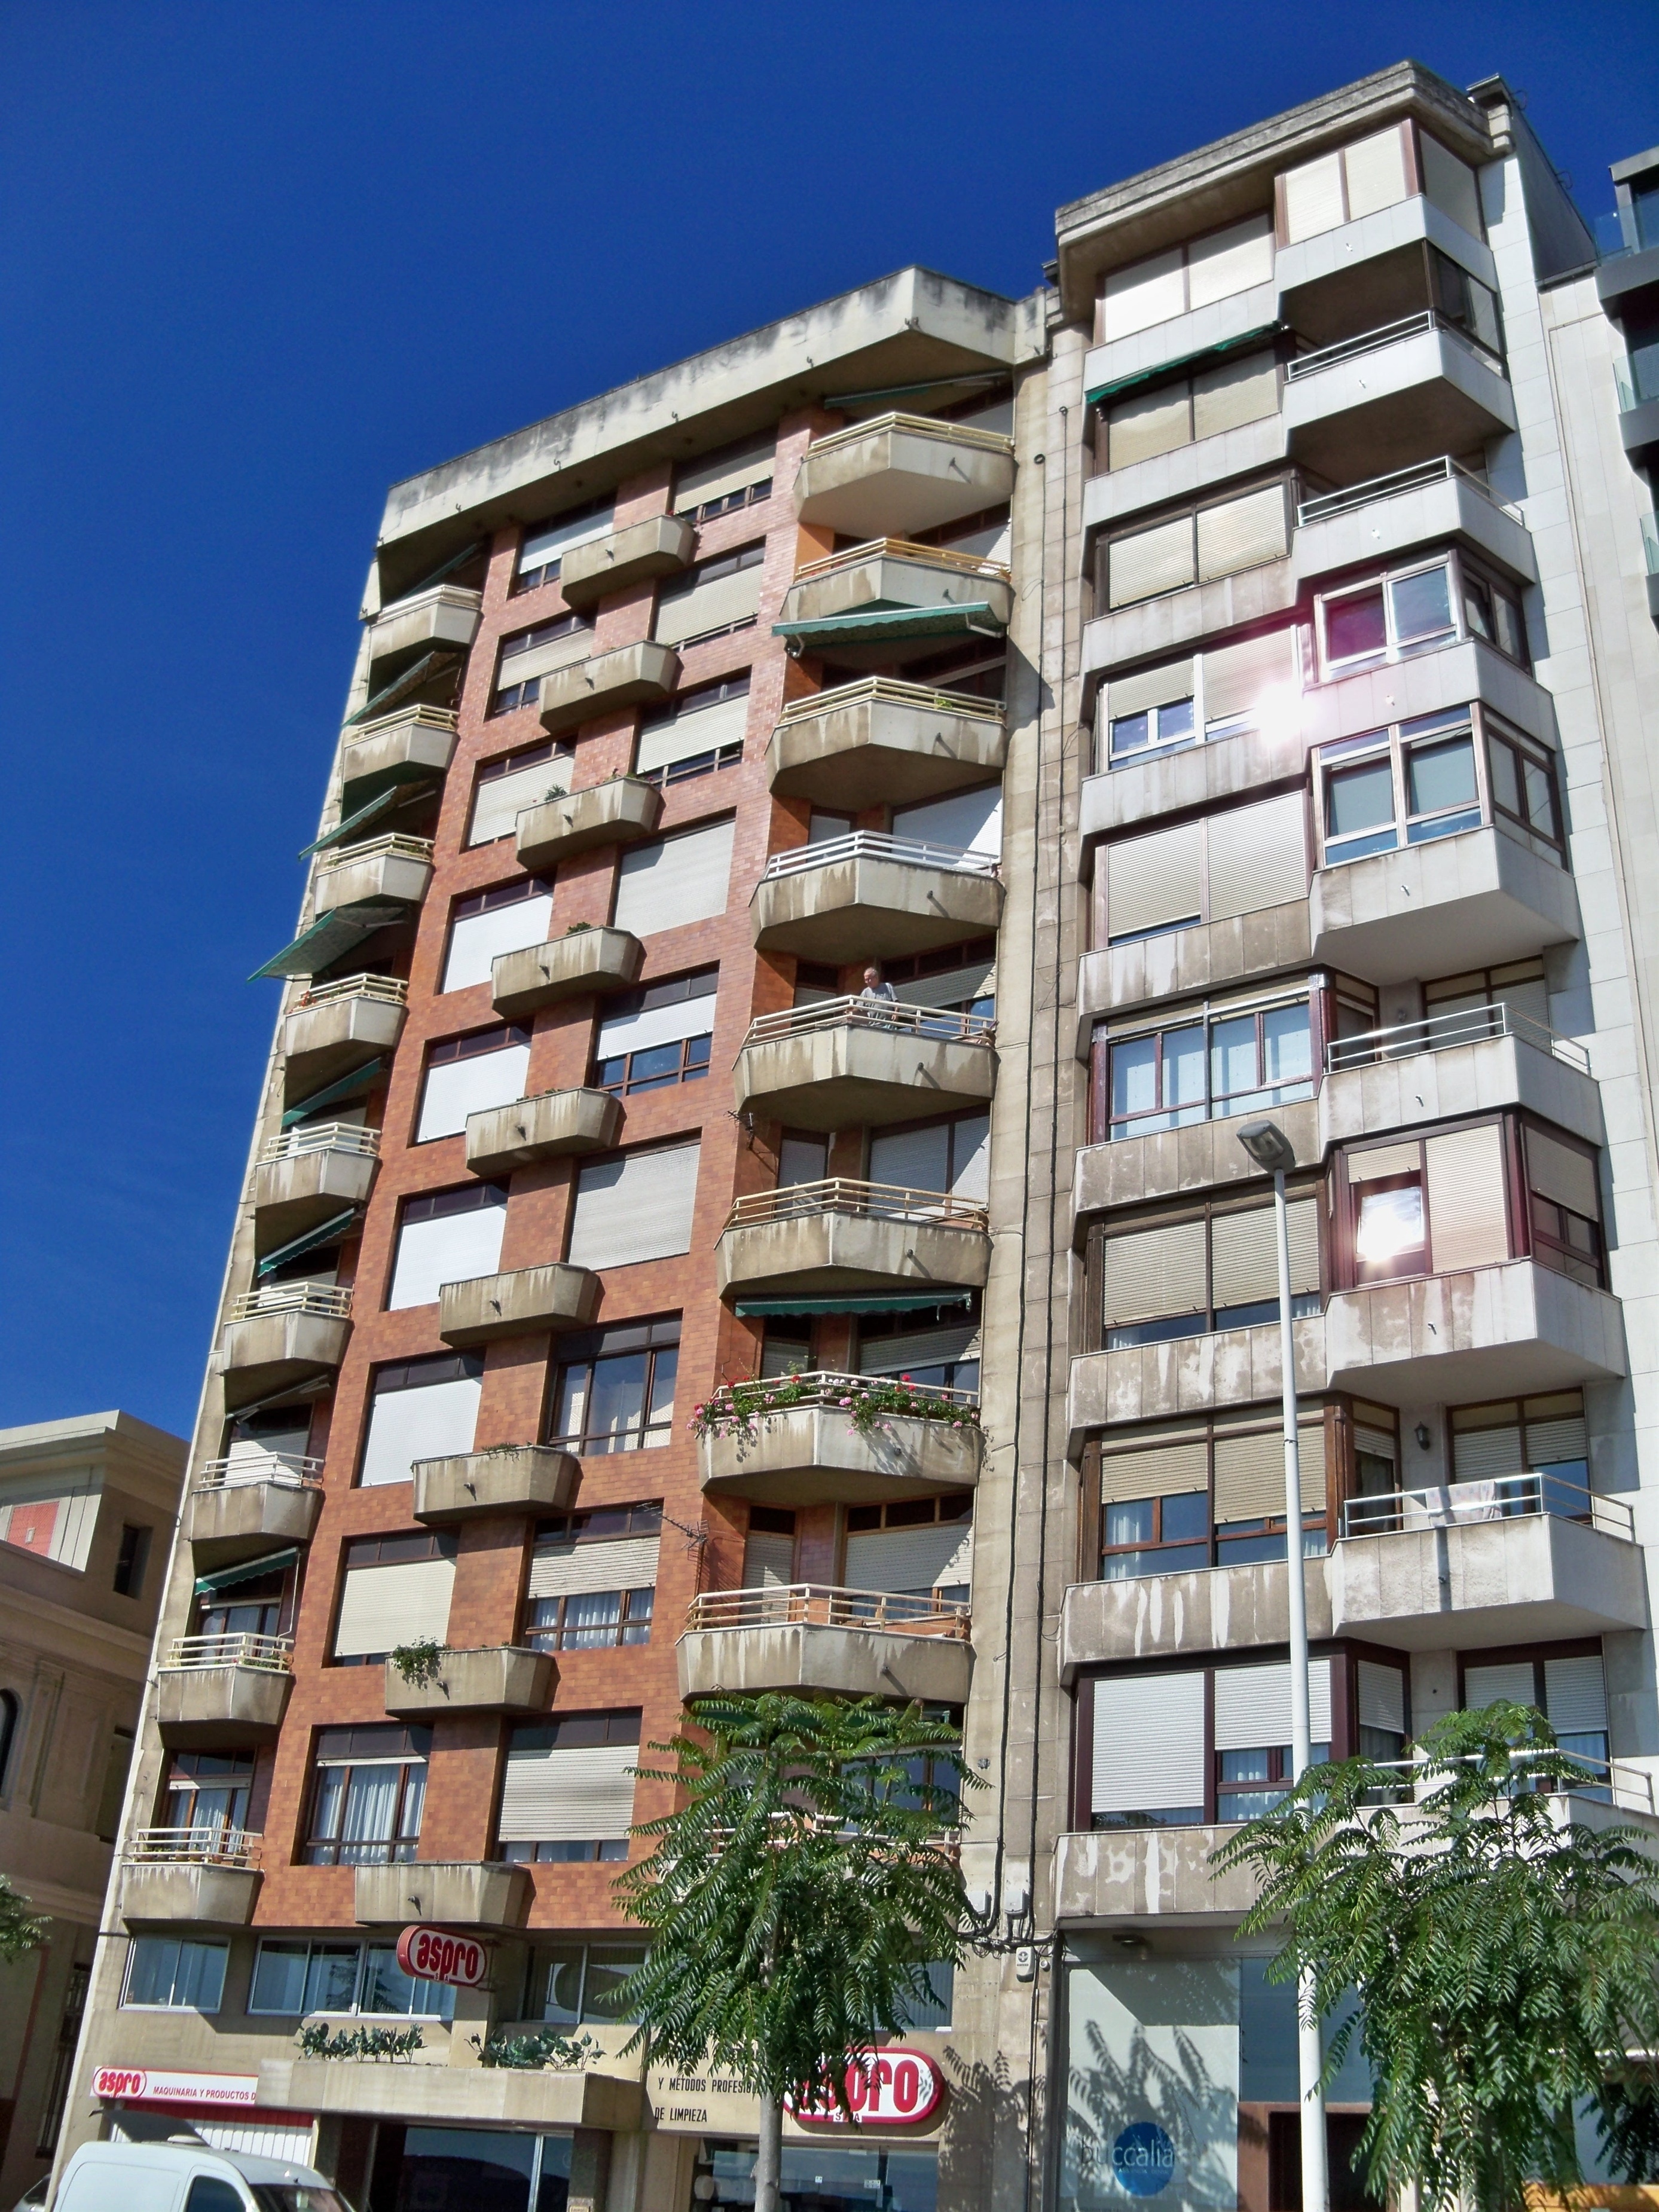 En qué capitales españolas están las habitaciones de alquiler más baratas y más caras